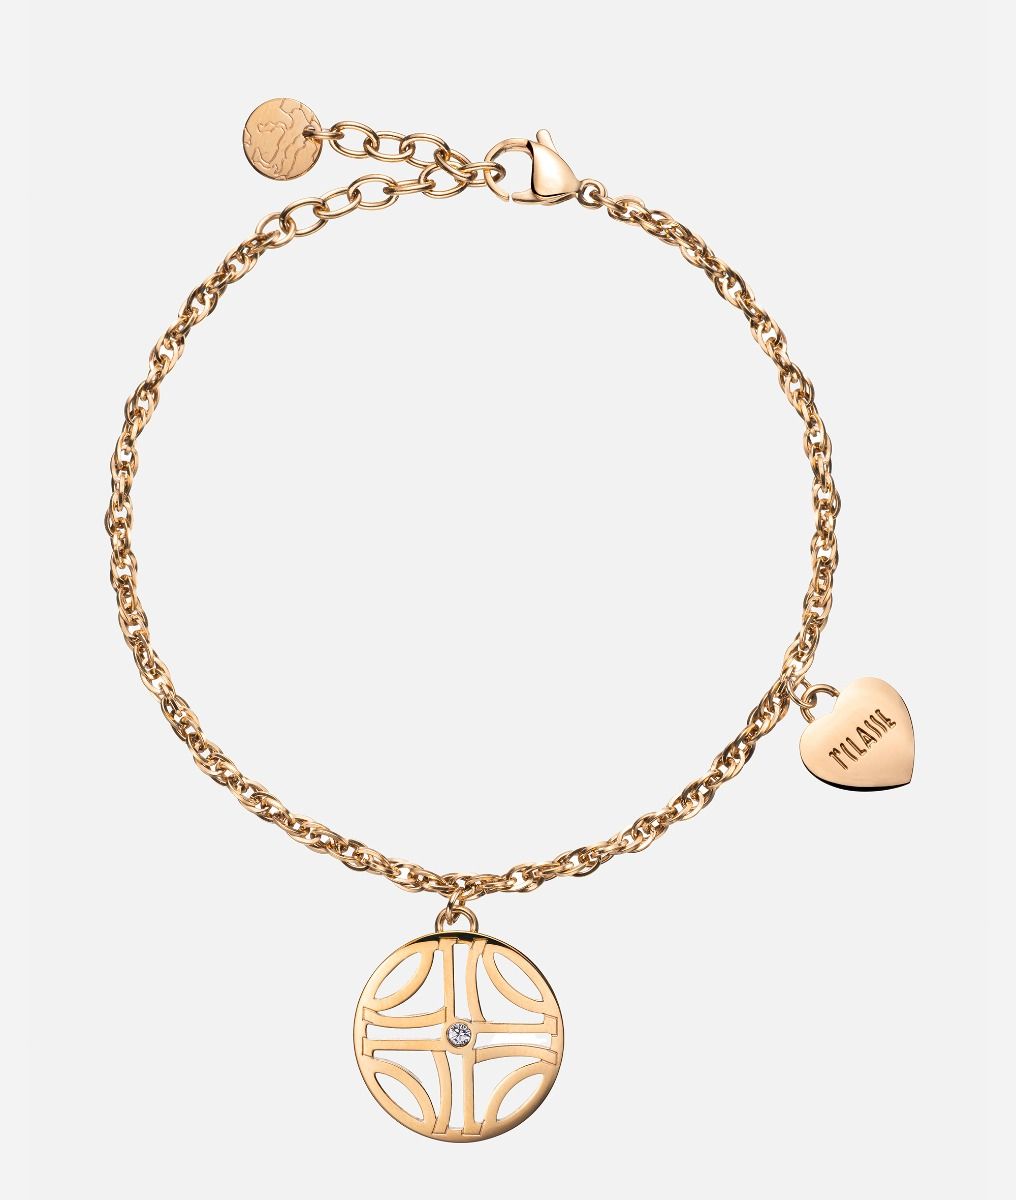 La Croisette gold-finish bracelet with charm,front